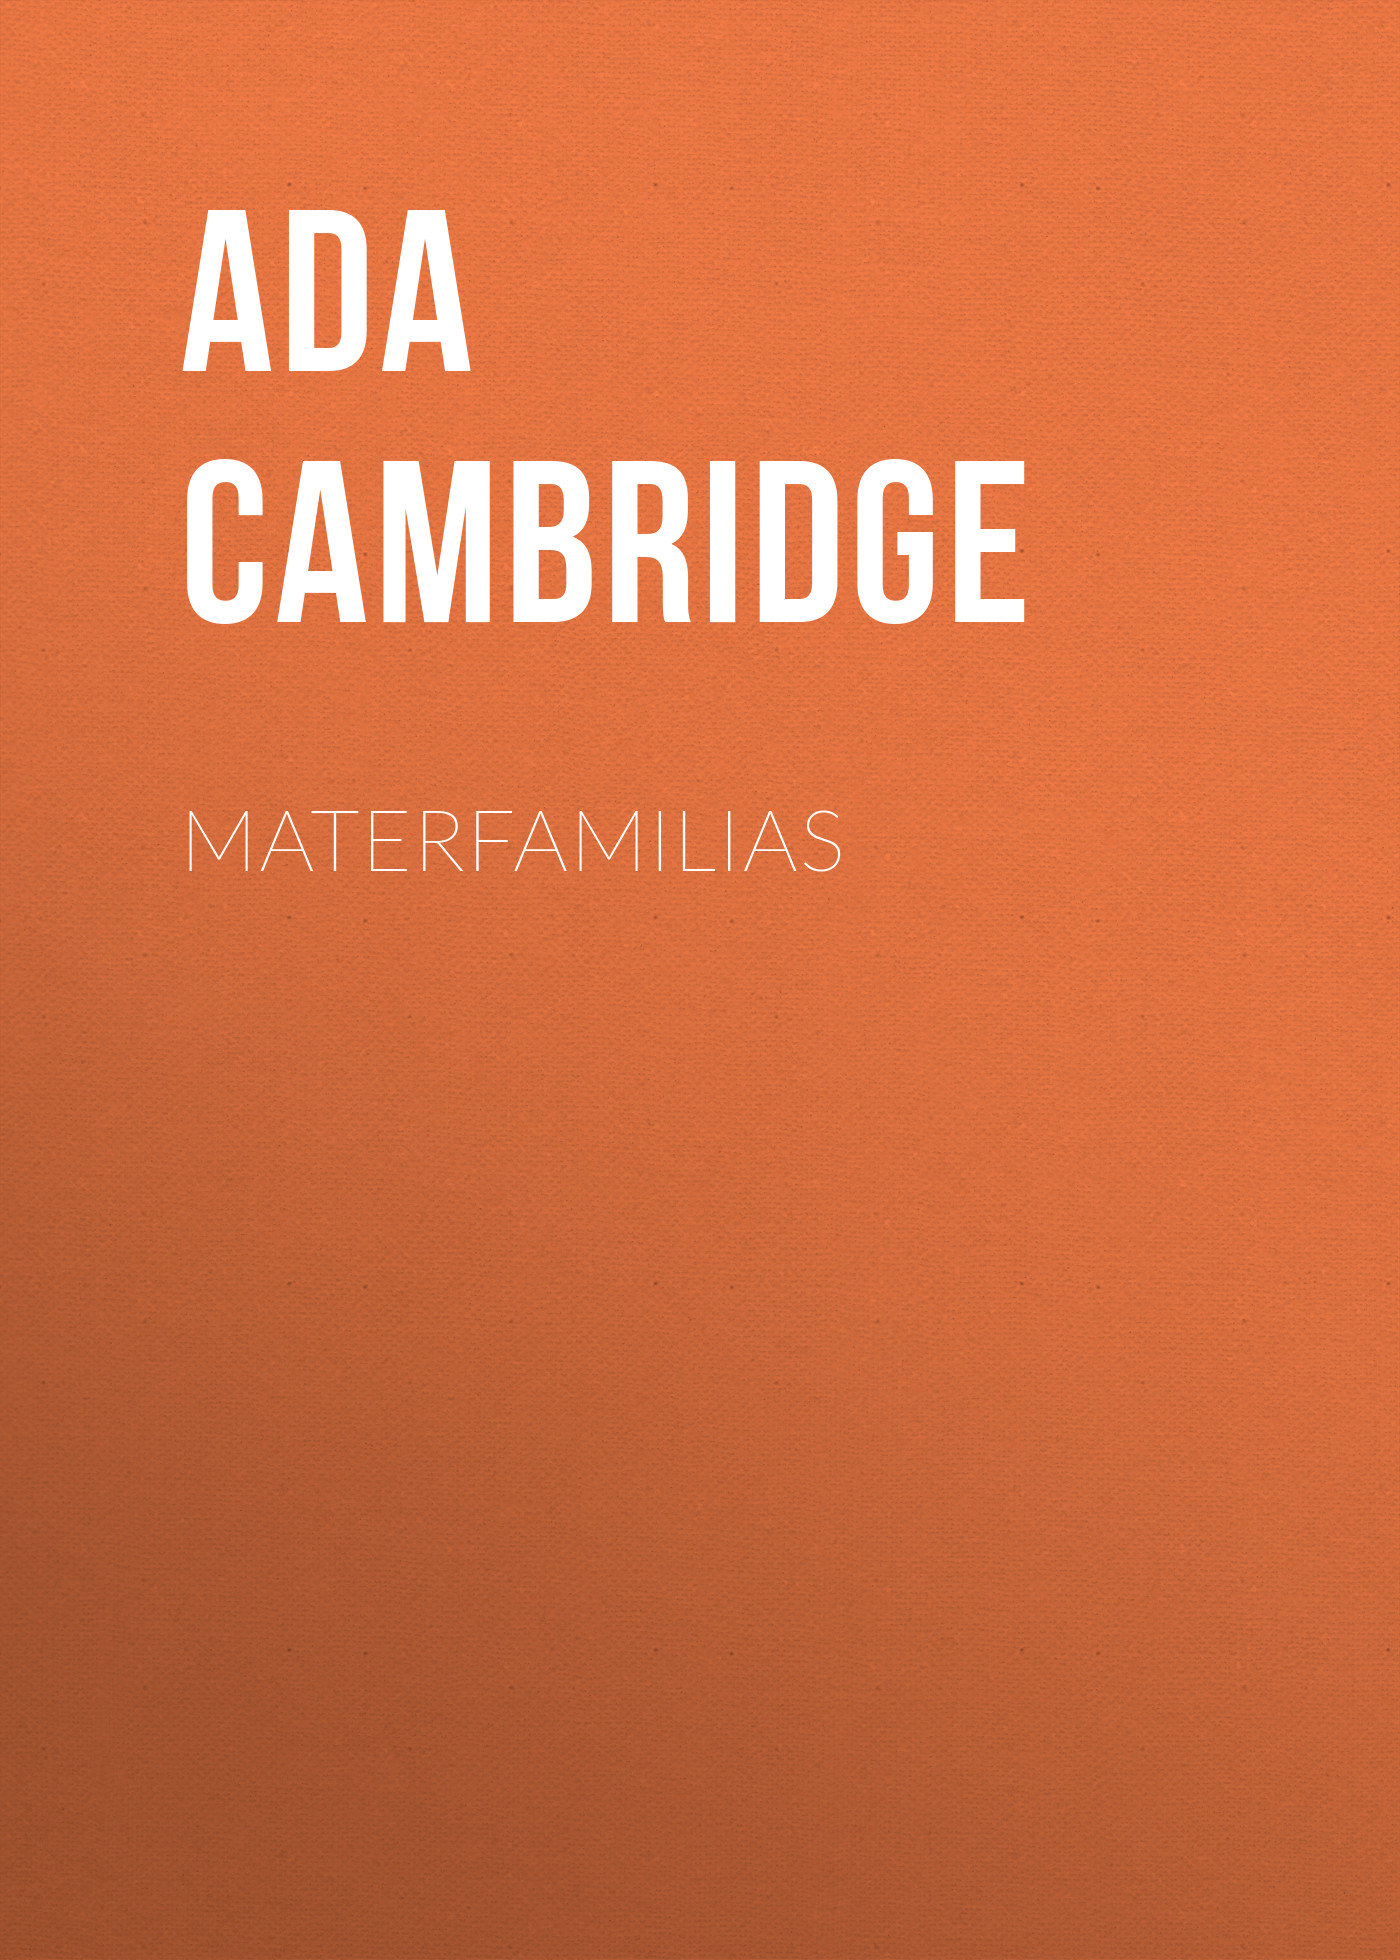 Книга Materfamilias из серии , созданная Ada Cambridge, может относится к жанру Зарубежная старинная литература, Зарубежная классика. Стоимость электронной книги Materfamilias с идентификатором 24174708 составляет 0.90 руб.